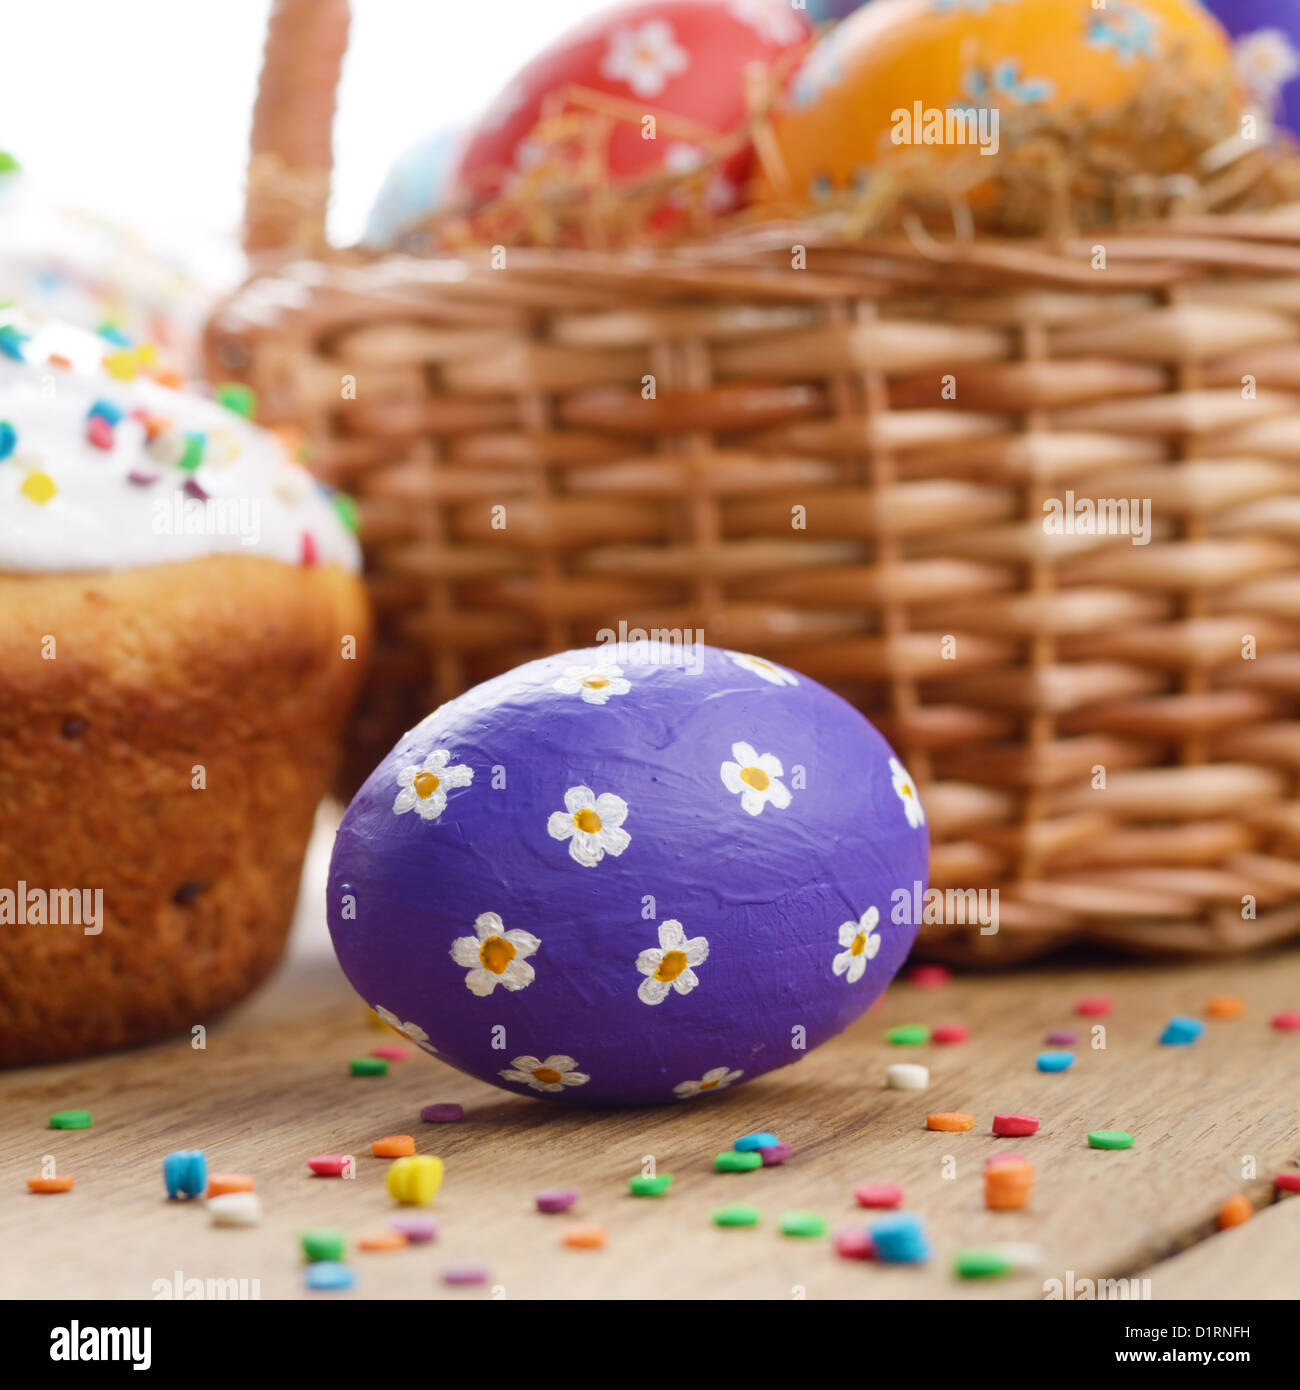 Décorations de Pâques - des œufs, des gâteaux et de panier sur le dessus de table Banque D'Images